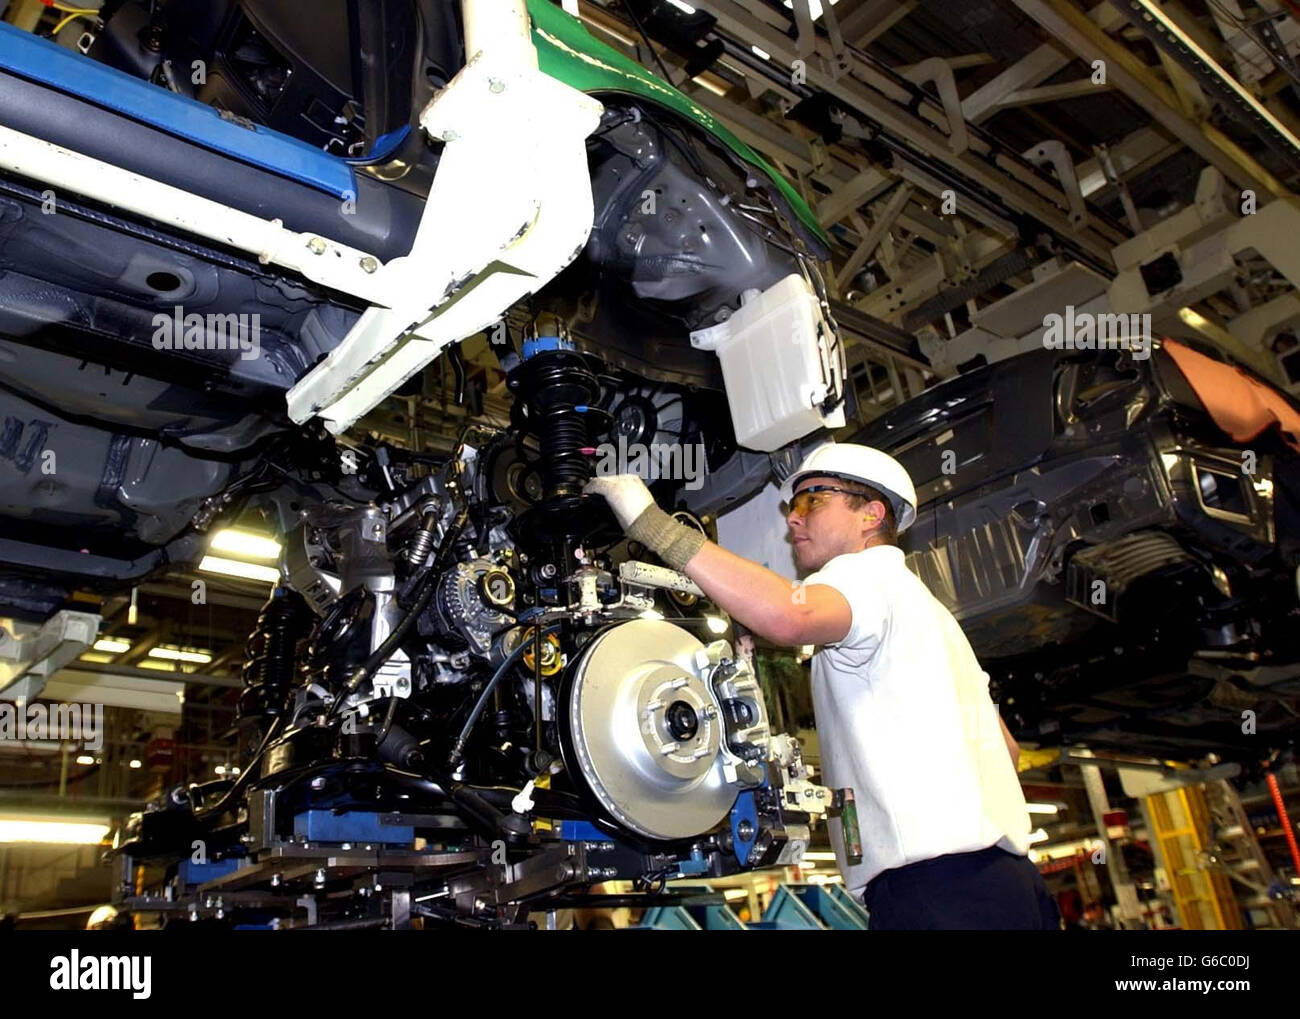 Ein Fabrikarbeiter an der Avensis-Motorenmontagelinie im Toyota-Werk in Burnaston, in der Nähe von Derby, wo der japanische Automobilgigant angekündigt hat, 1,000 neue Arbeitsplätze zu schaffen und auf eine 24-Stunden-Produktion umzusteigen. * der neue Avensis hat Anfang des Jahres begonnen, die Produktion zu starten und wird der erste in Europa gebaute Toyota, der später in diesem Jahr nach Japan exportiert wird. Die Fabrik baut auch den Corolla, wobei 80 % der Autos von Burnaston exportiert werden. Stockfoto